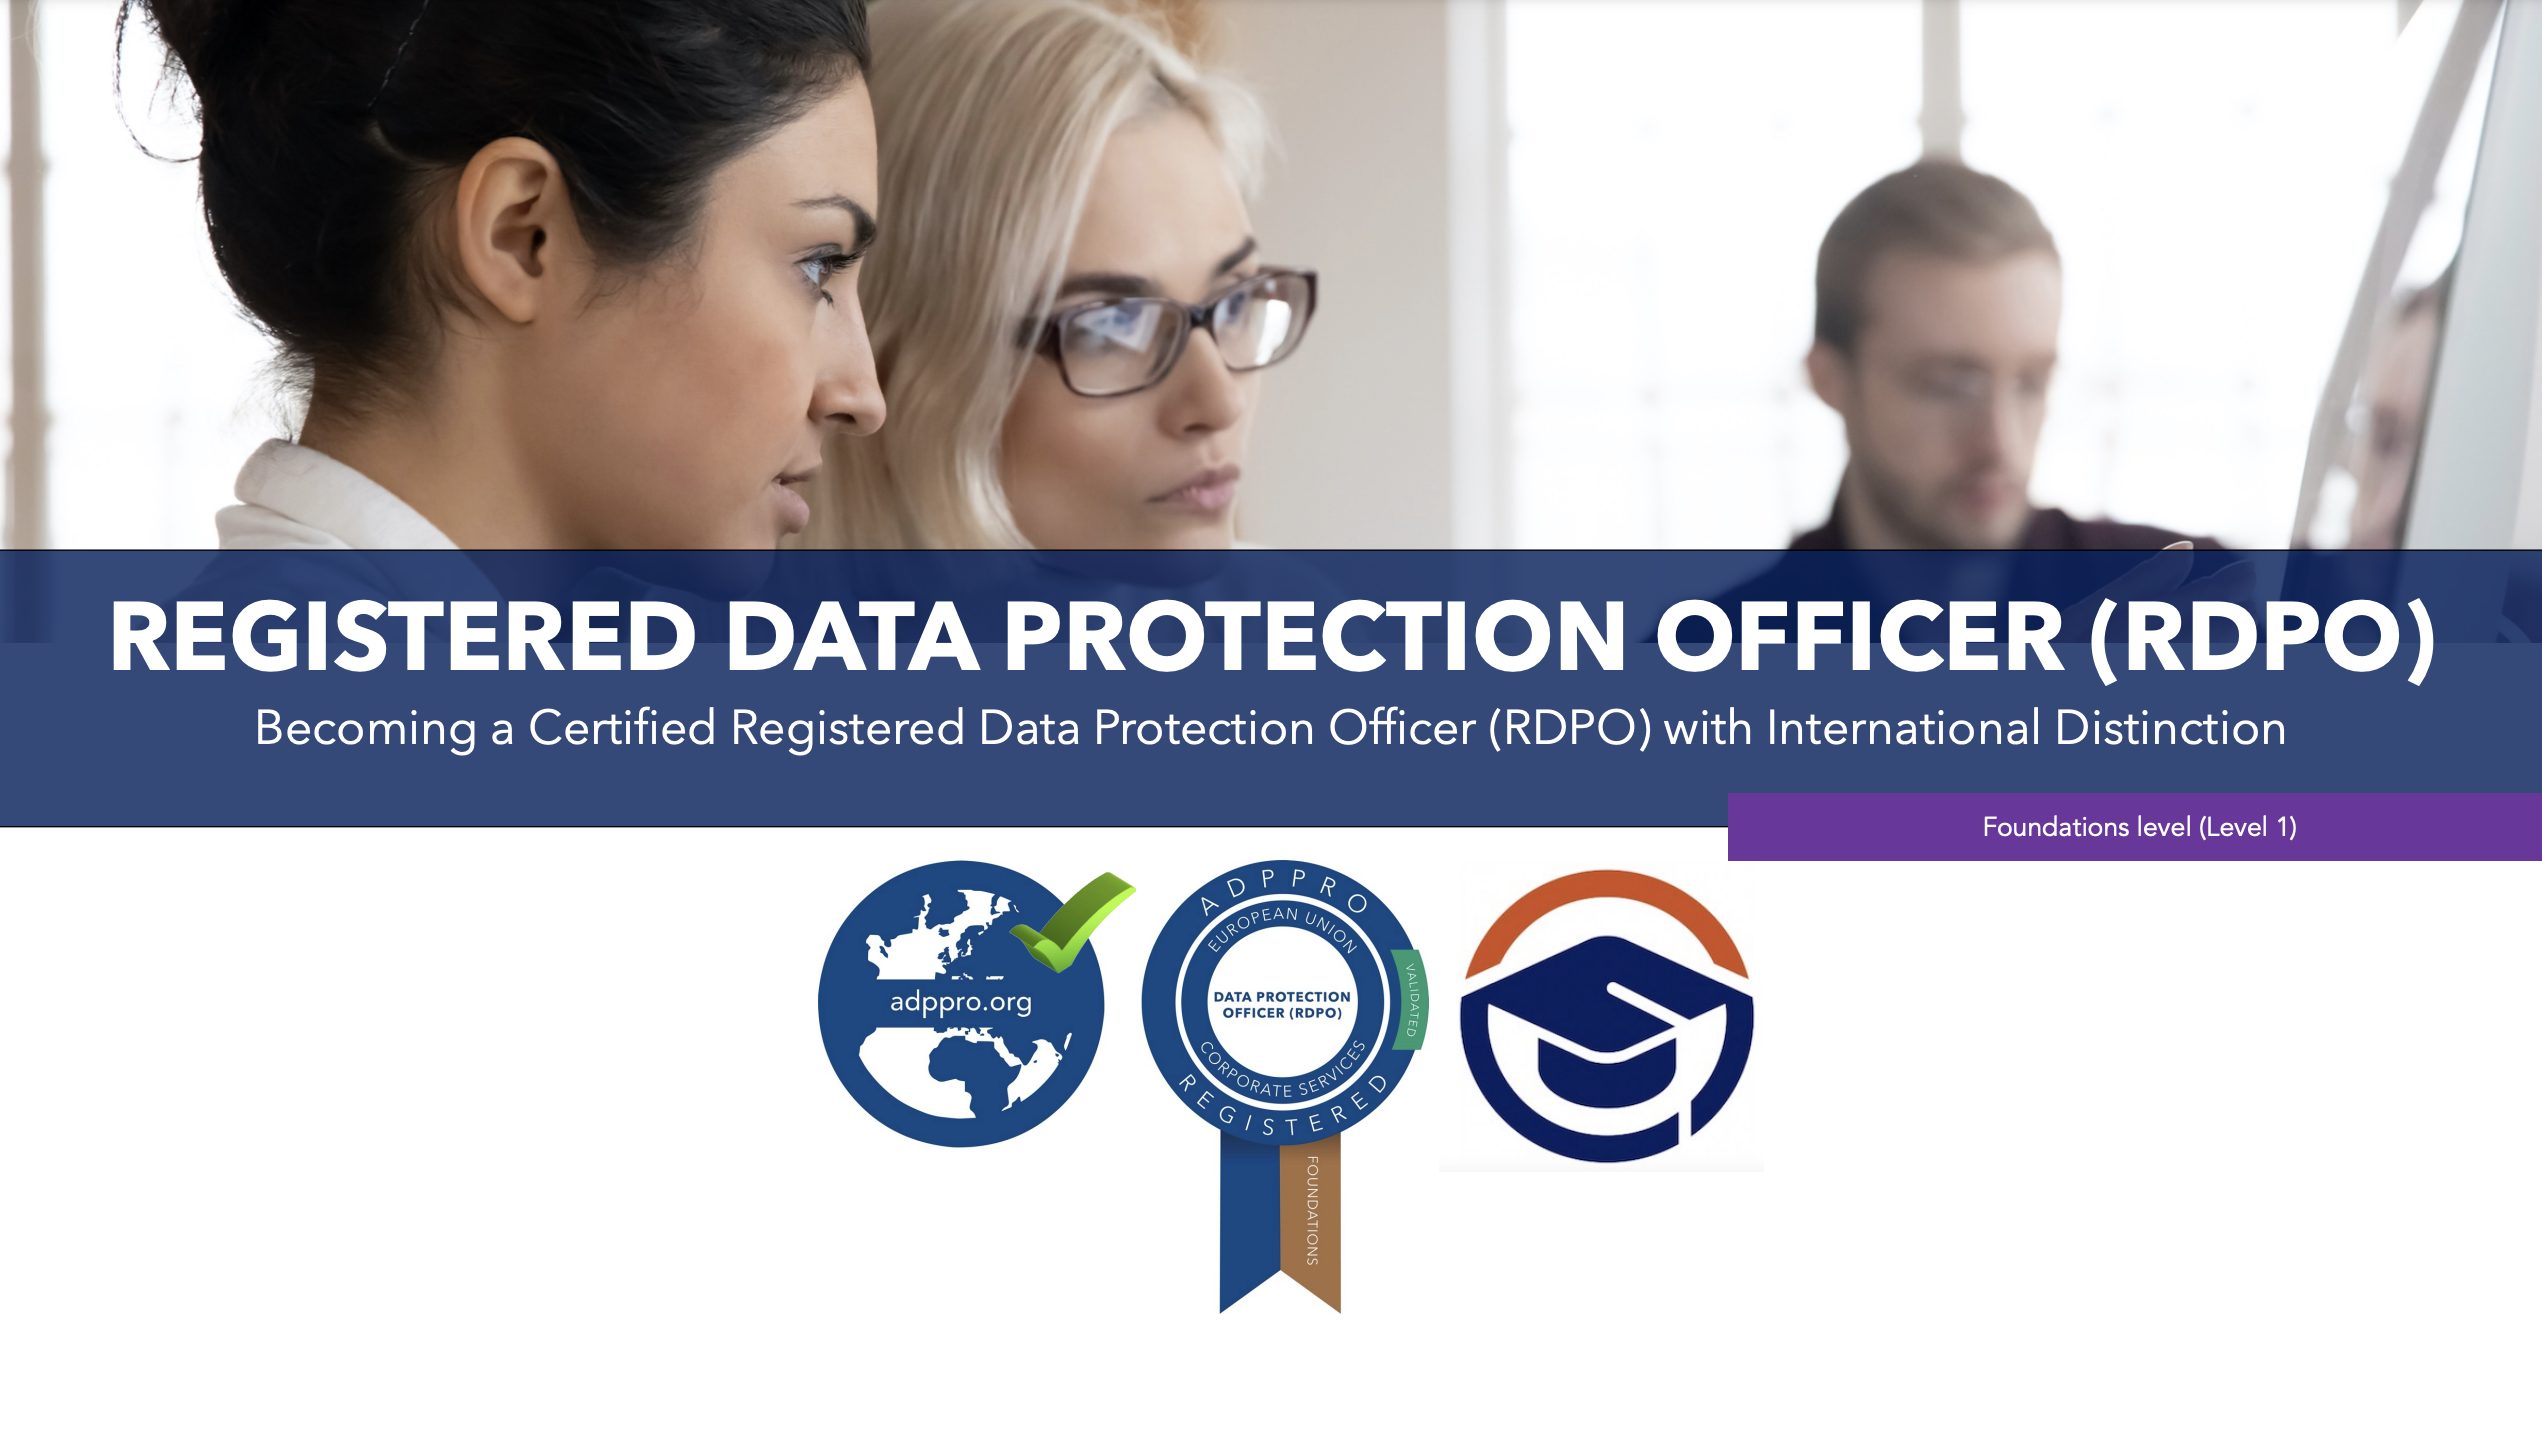 Registered Data Protection Officer (RDPO)